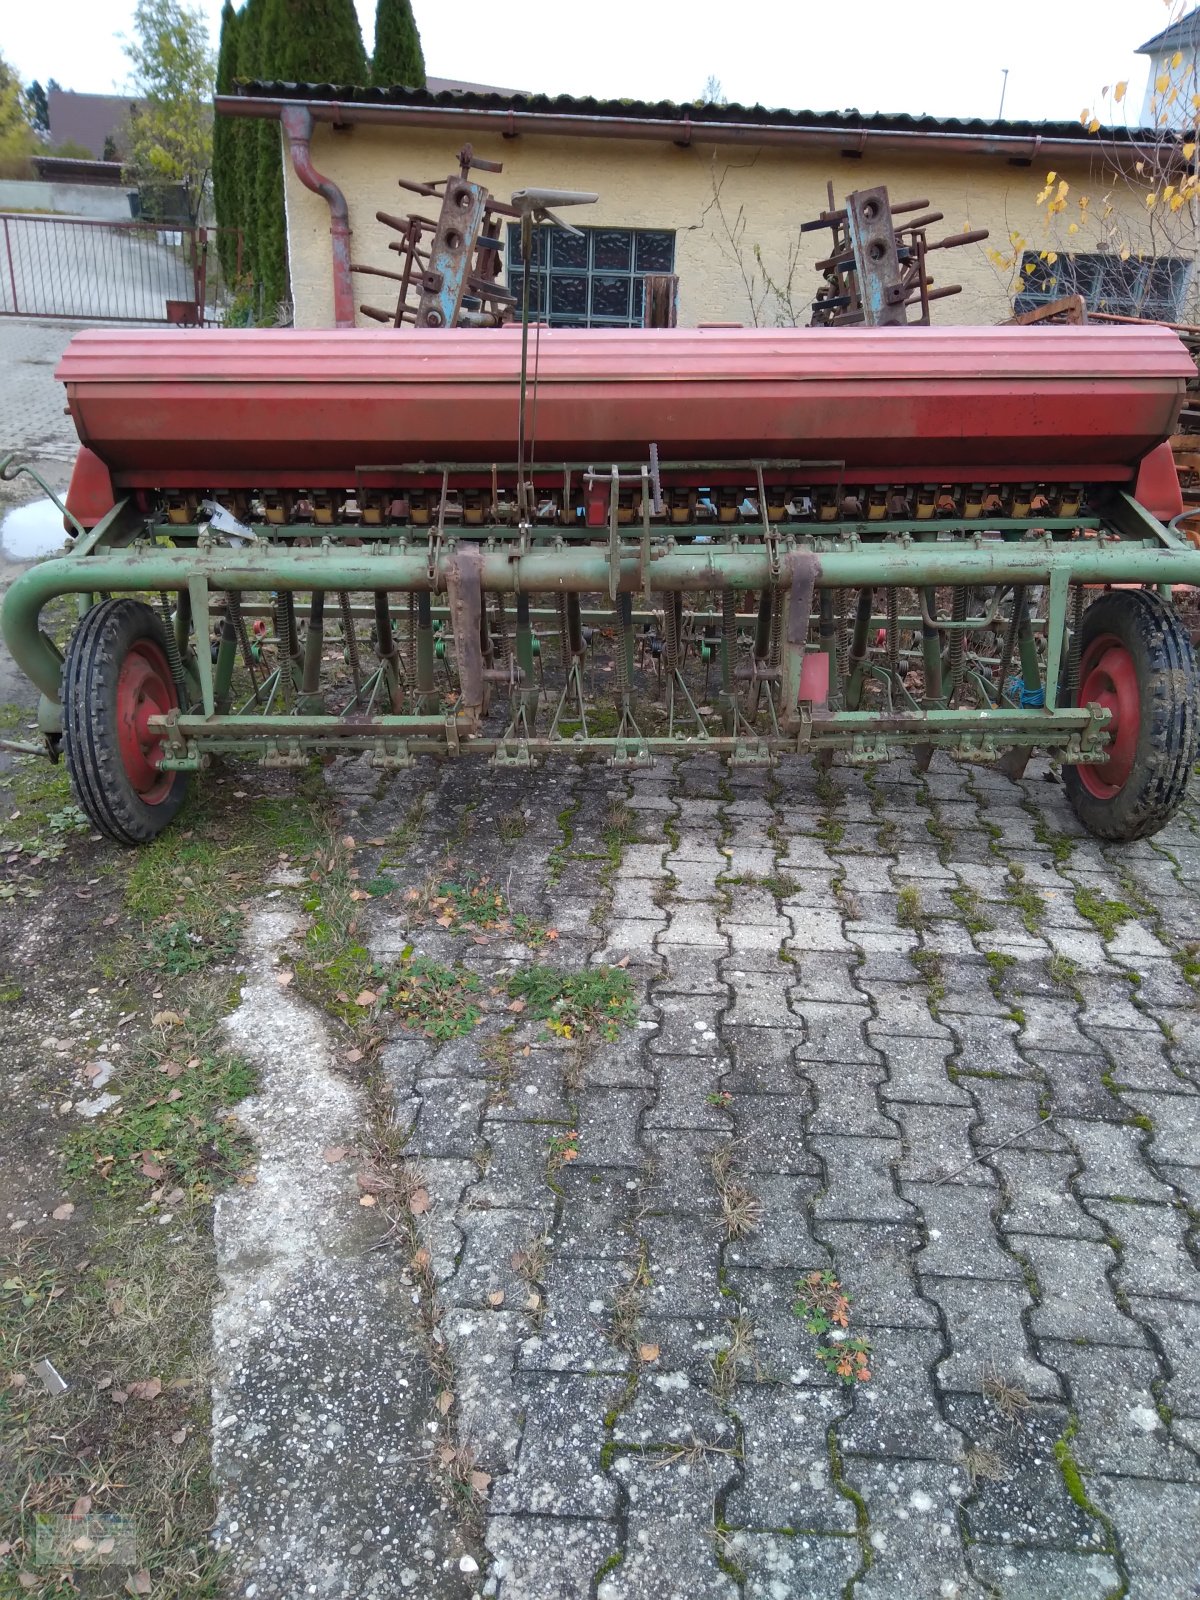 Sämaschine des Typs Nodet 3m, Gebrauchtmaschine in Neustadt a.d. Donau (Bild 2)